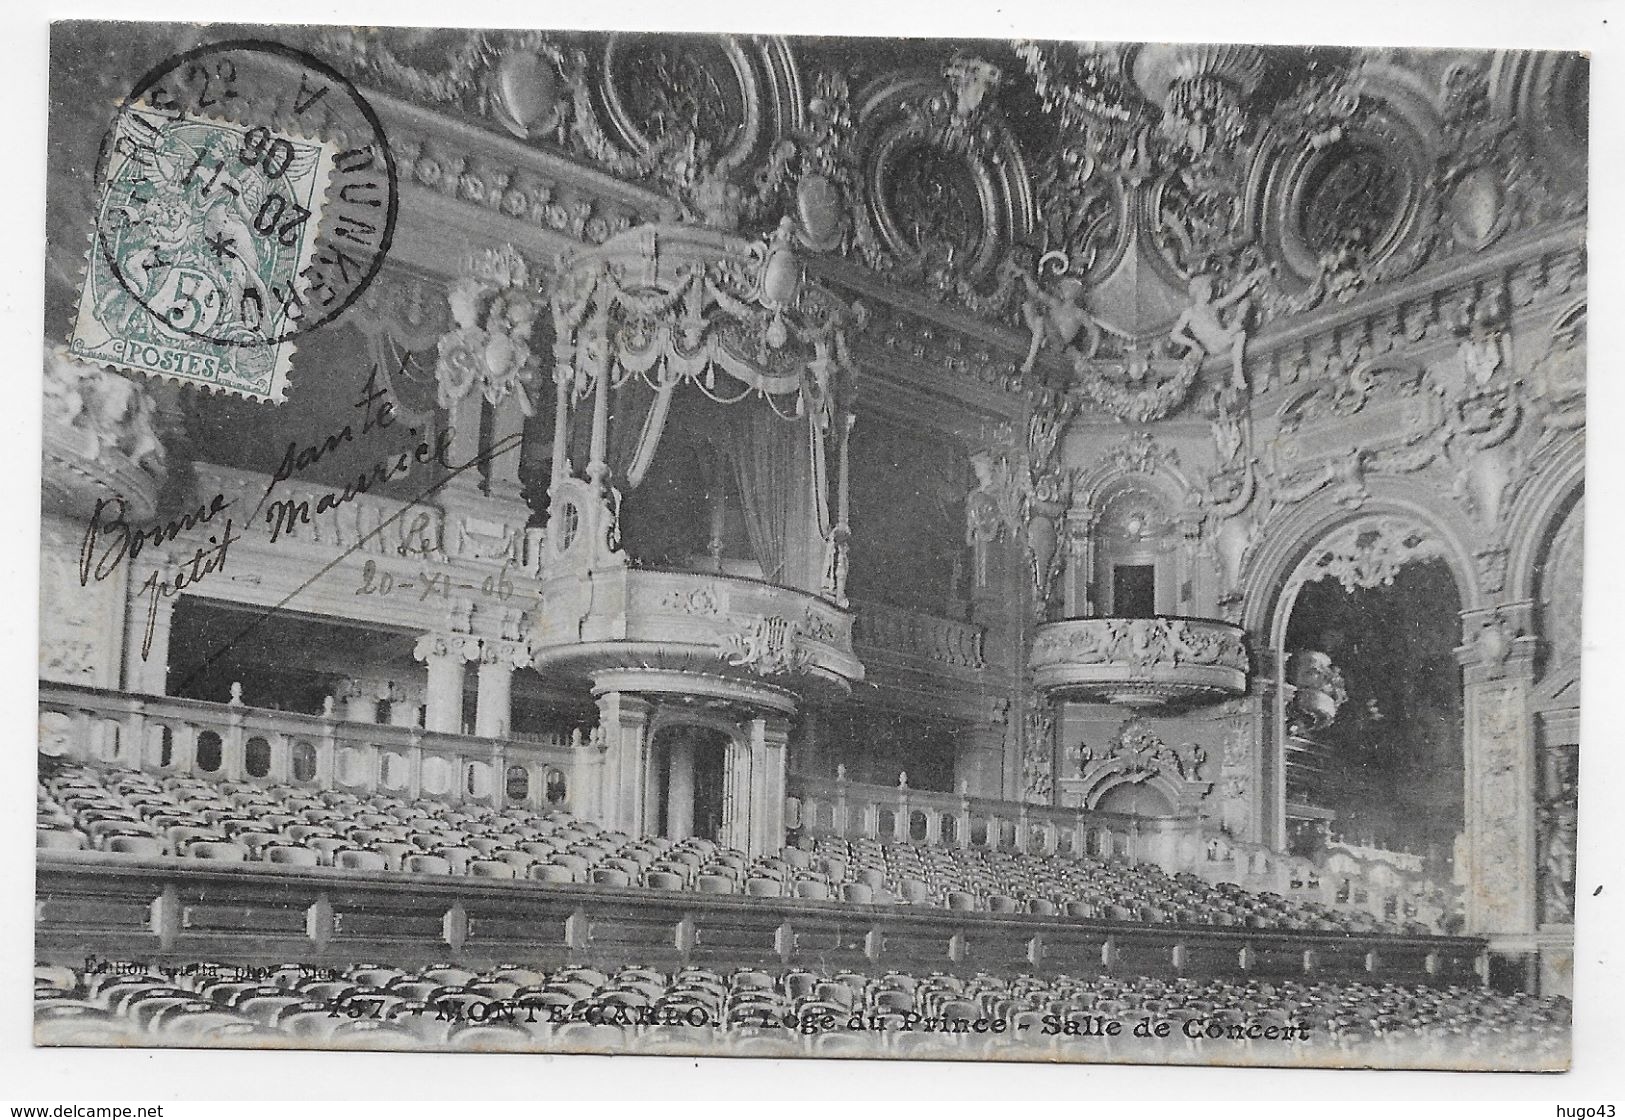 MONTE CARLO EN 1906 - N° 757 - SALLE DE CONCERT - LOGE DU PRINCE CACHET AMBULANT TRI FERROVIAIRE - CPA - Teatro De ópera